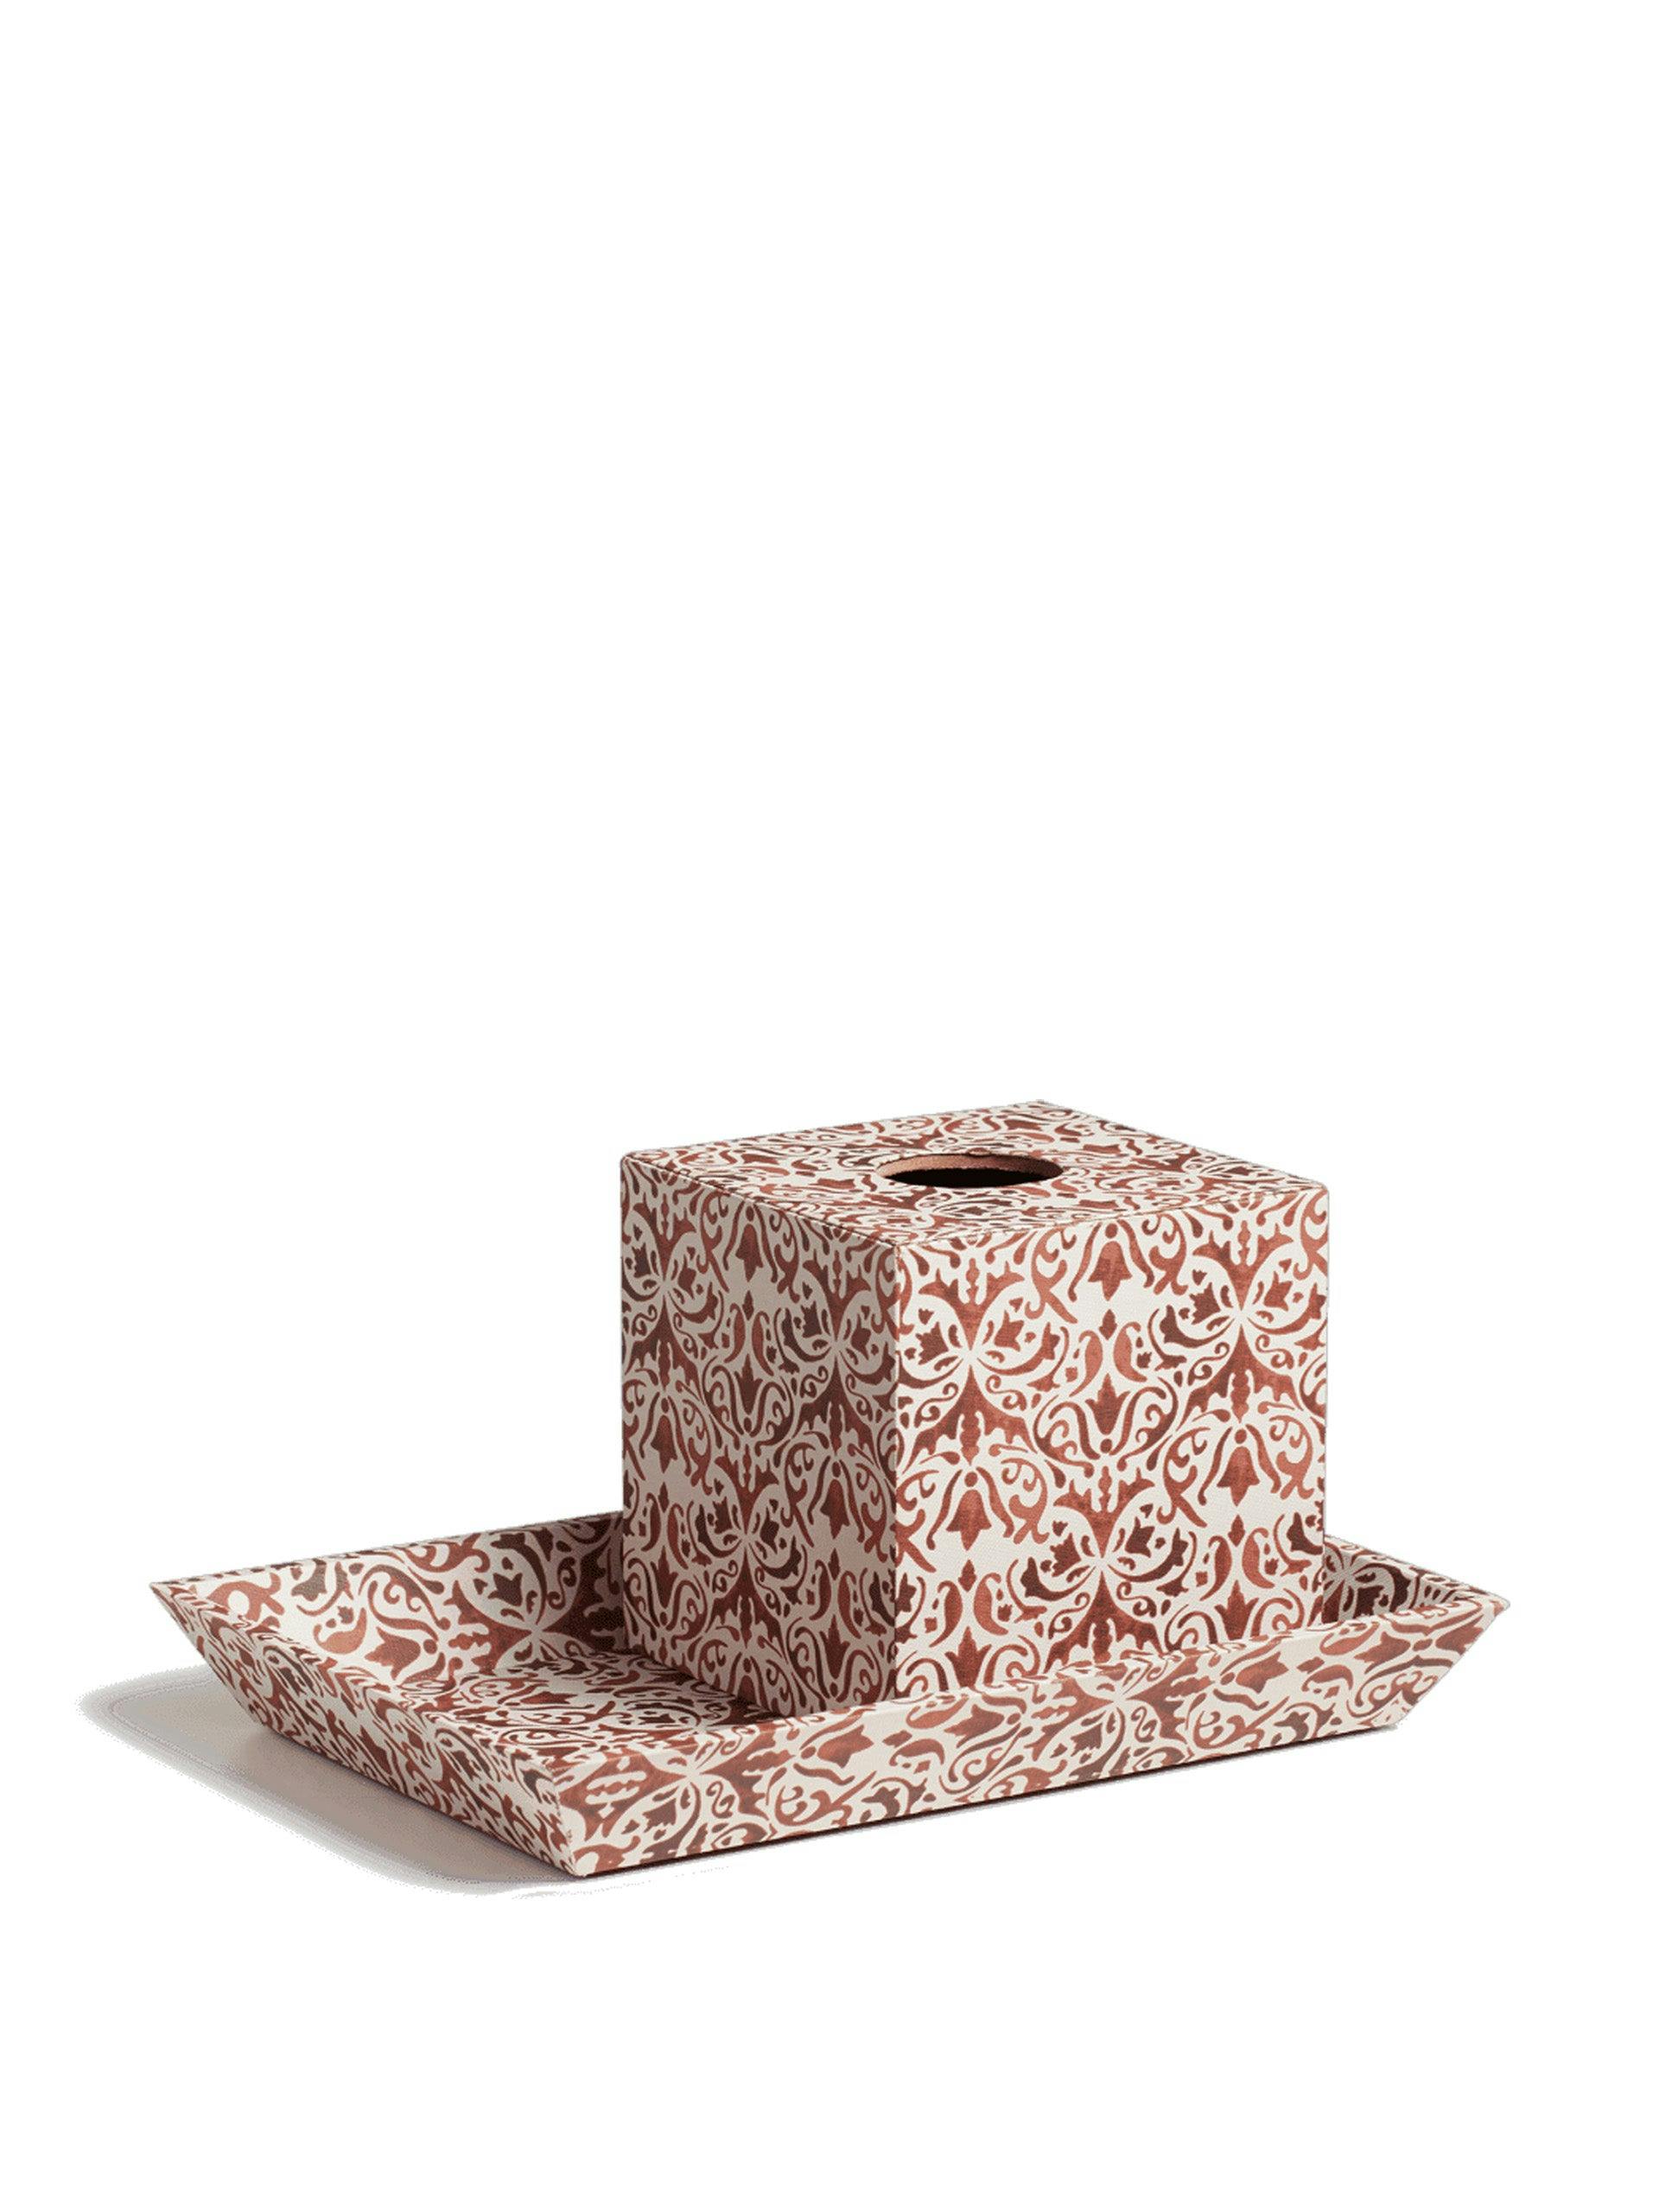 Tissue box and tray